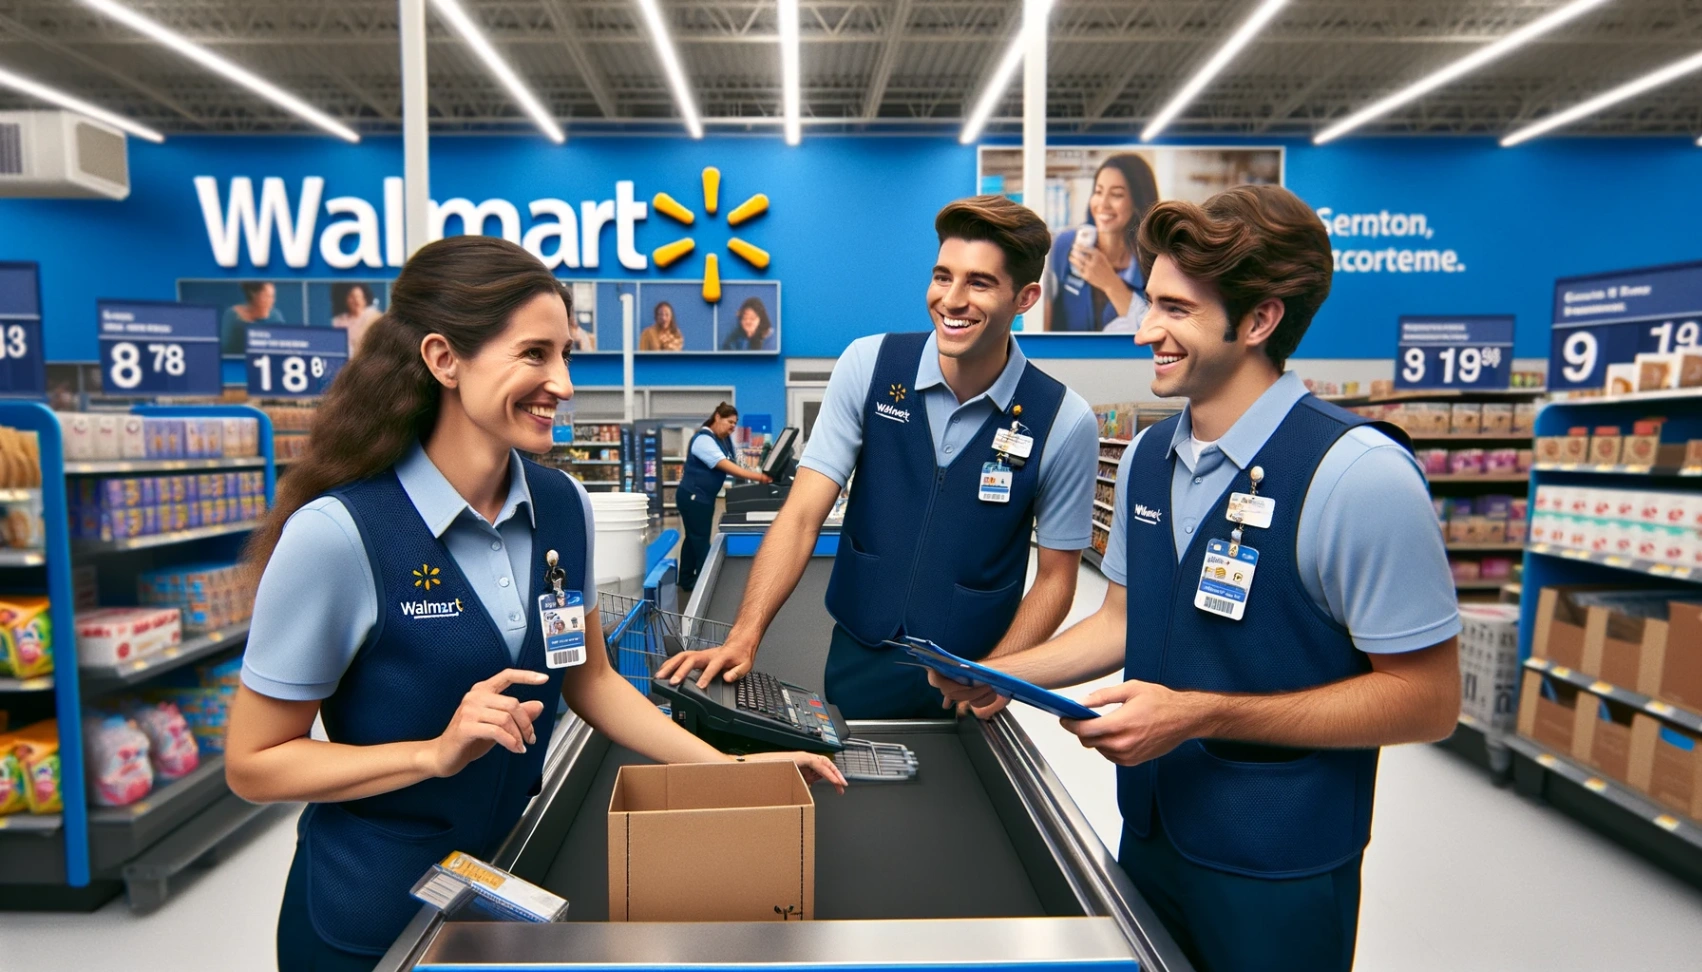 Walmart Jobangebote - Erfahren Sie, wie Sie sich online bewerben können